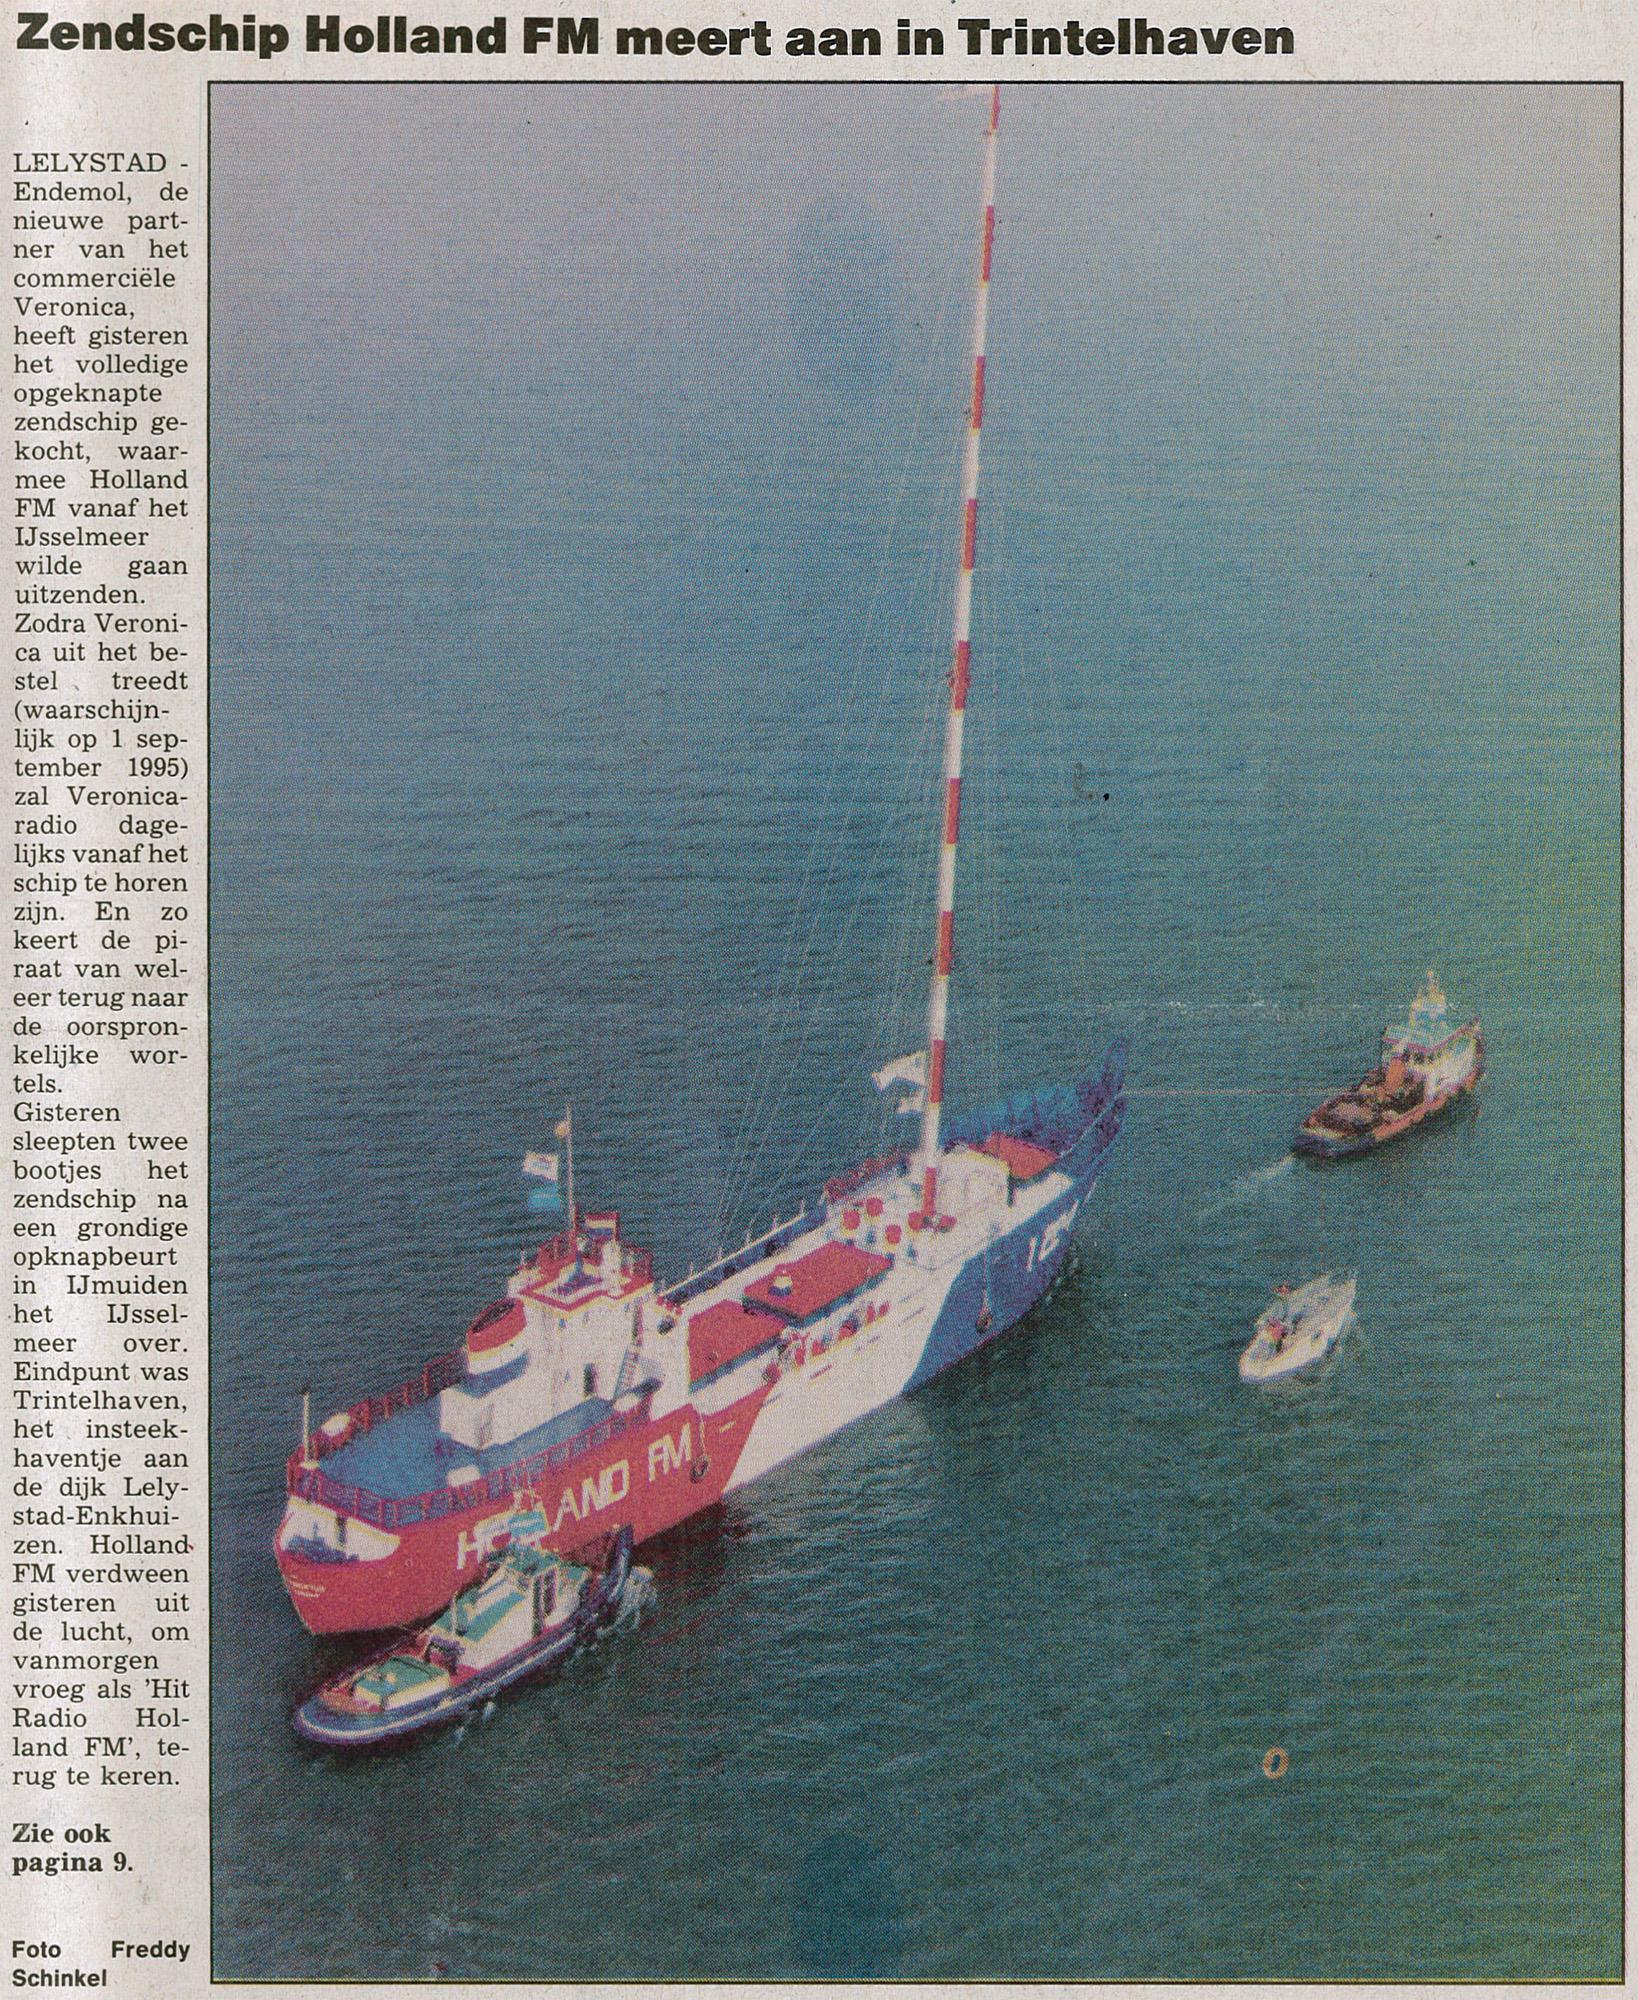 19941011 Zwolse courant Zendschip Holland FM meert aan in Trintelhaven.jpg